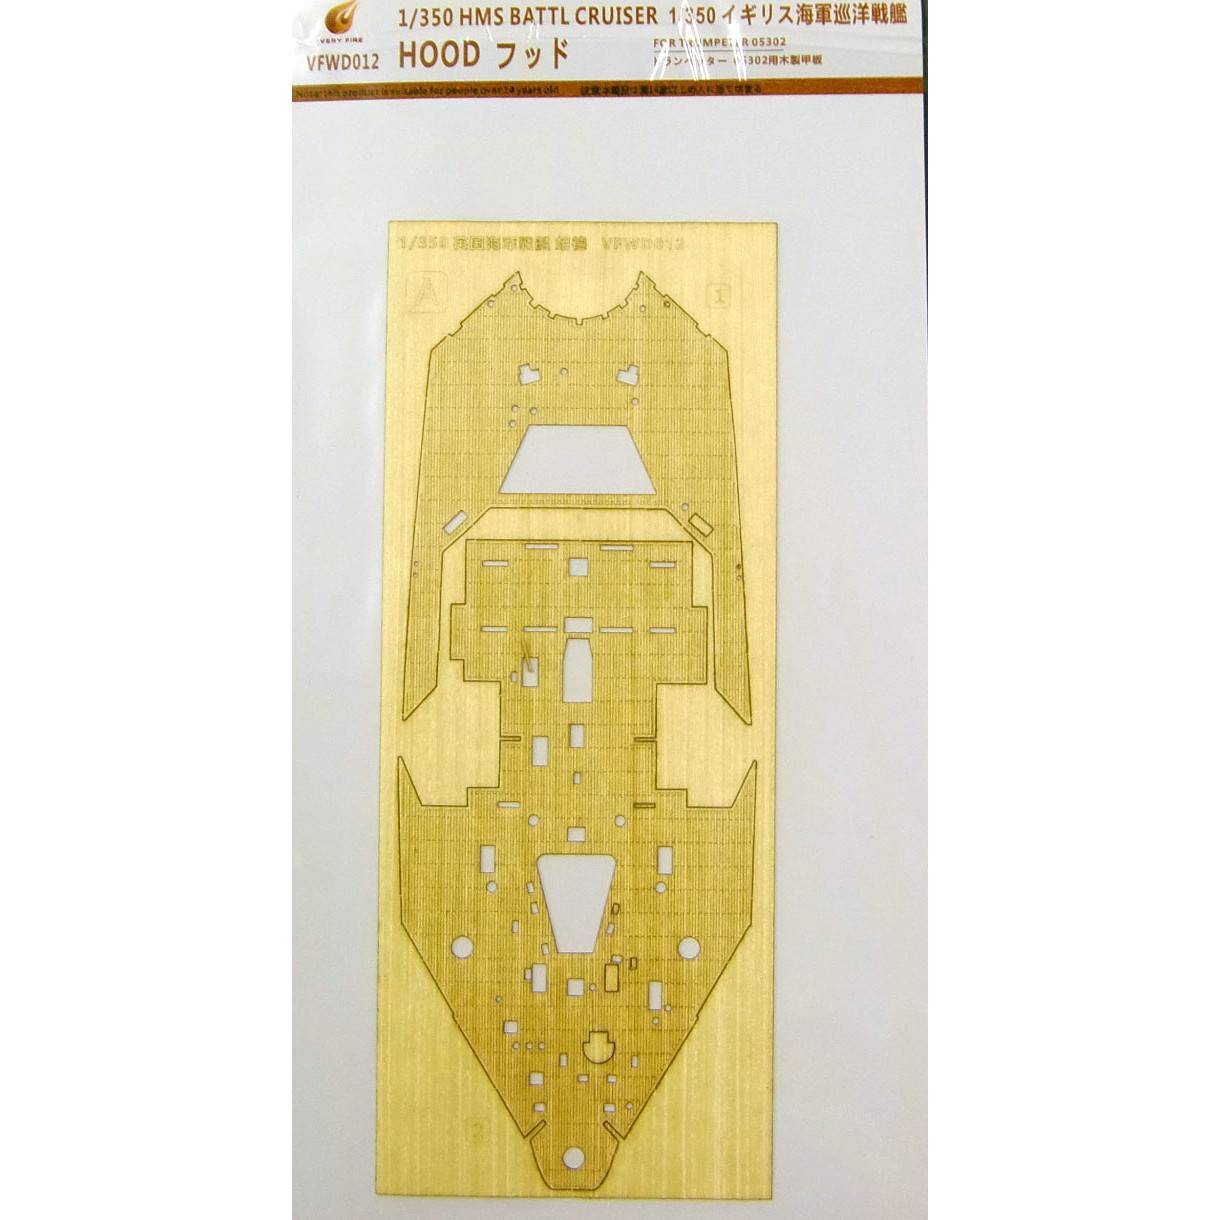 【新製品】VFWD012 英海軍 巡洋戦艦 フッド用 木製甲板